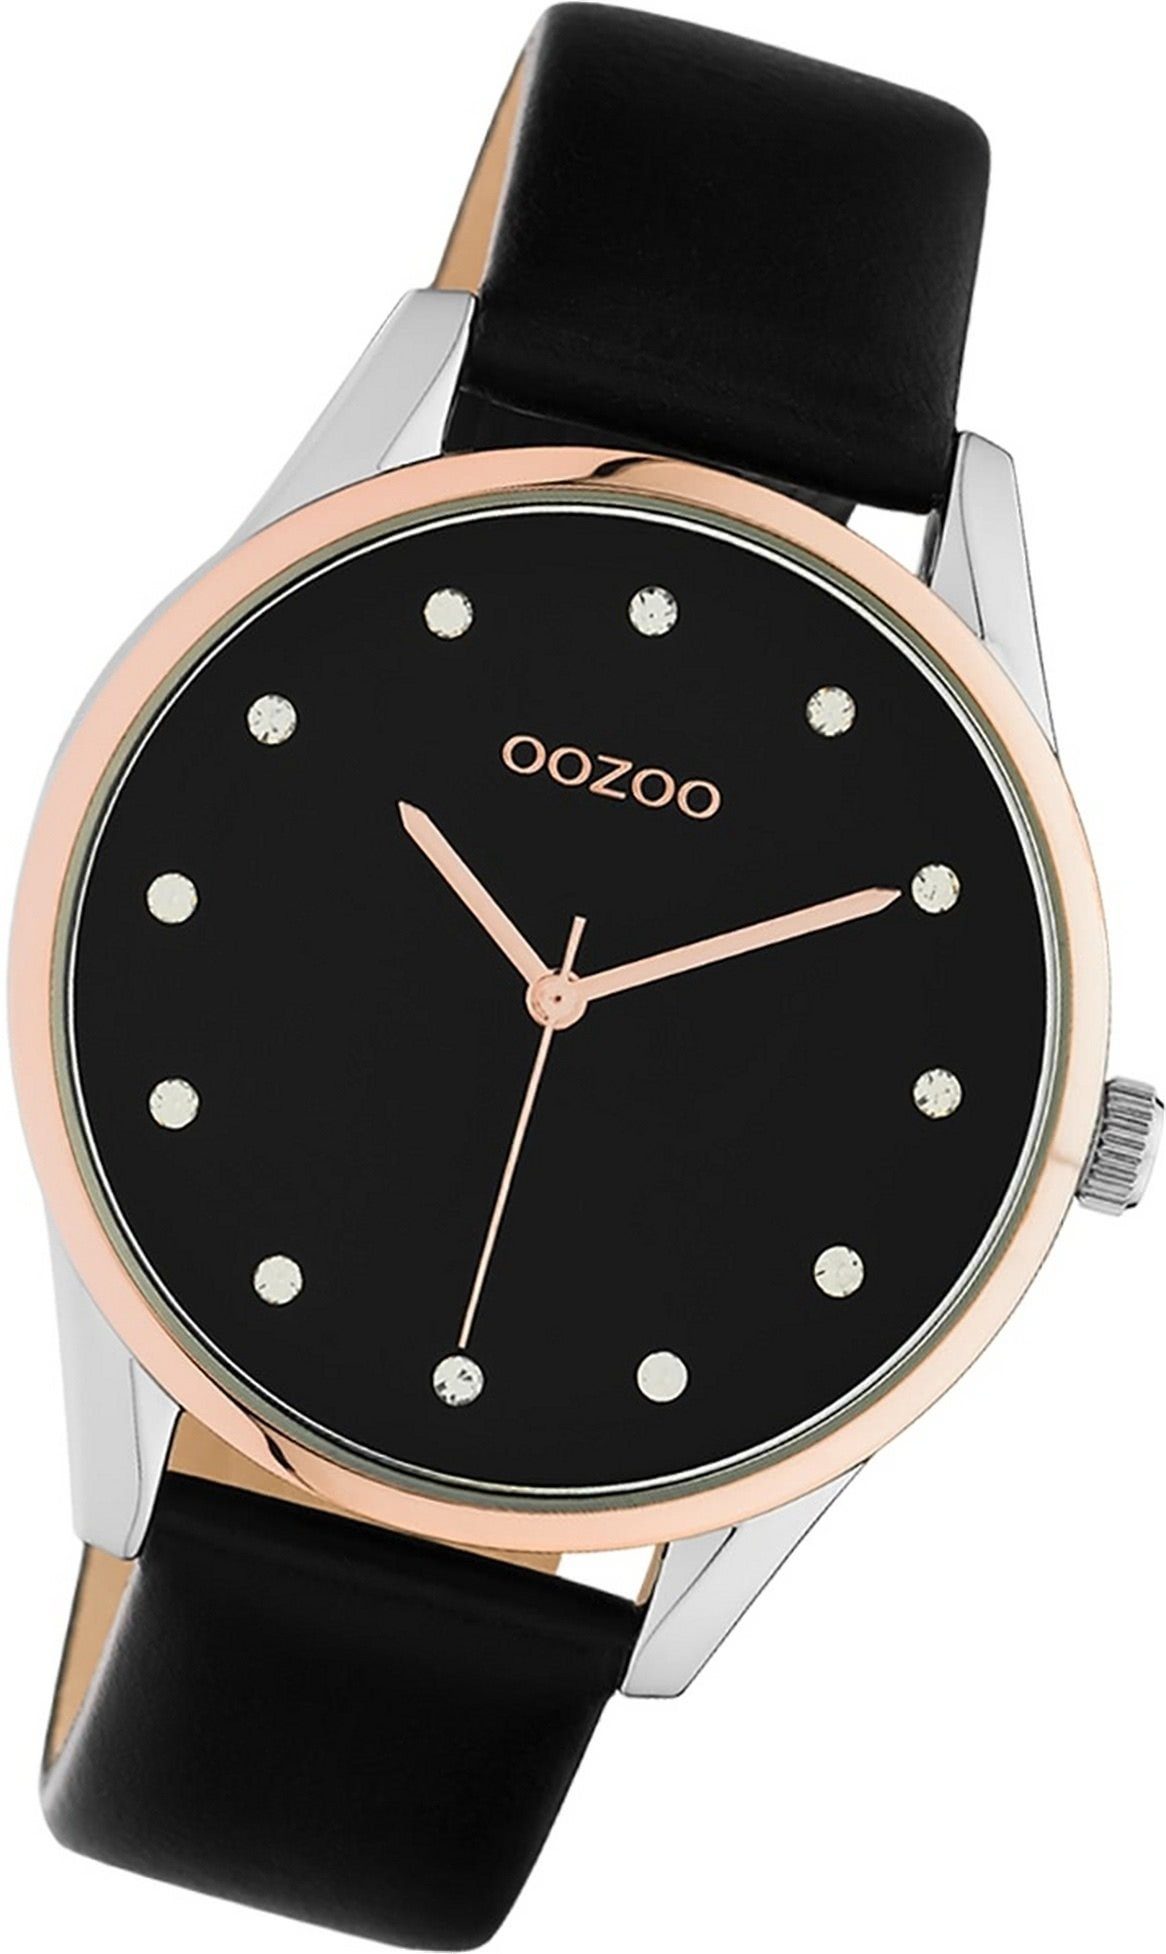 OOZOO Quarzuhr Oozoo Leder Damen Uhr C10954 Analog, Damenuhr Lederarmband schwarz, rundes Gehäuse, groß (ca. 40mm)